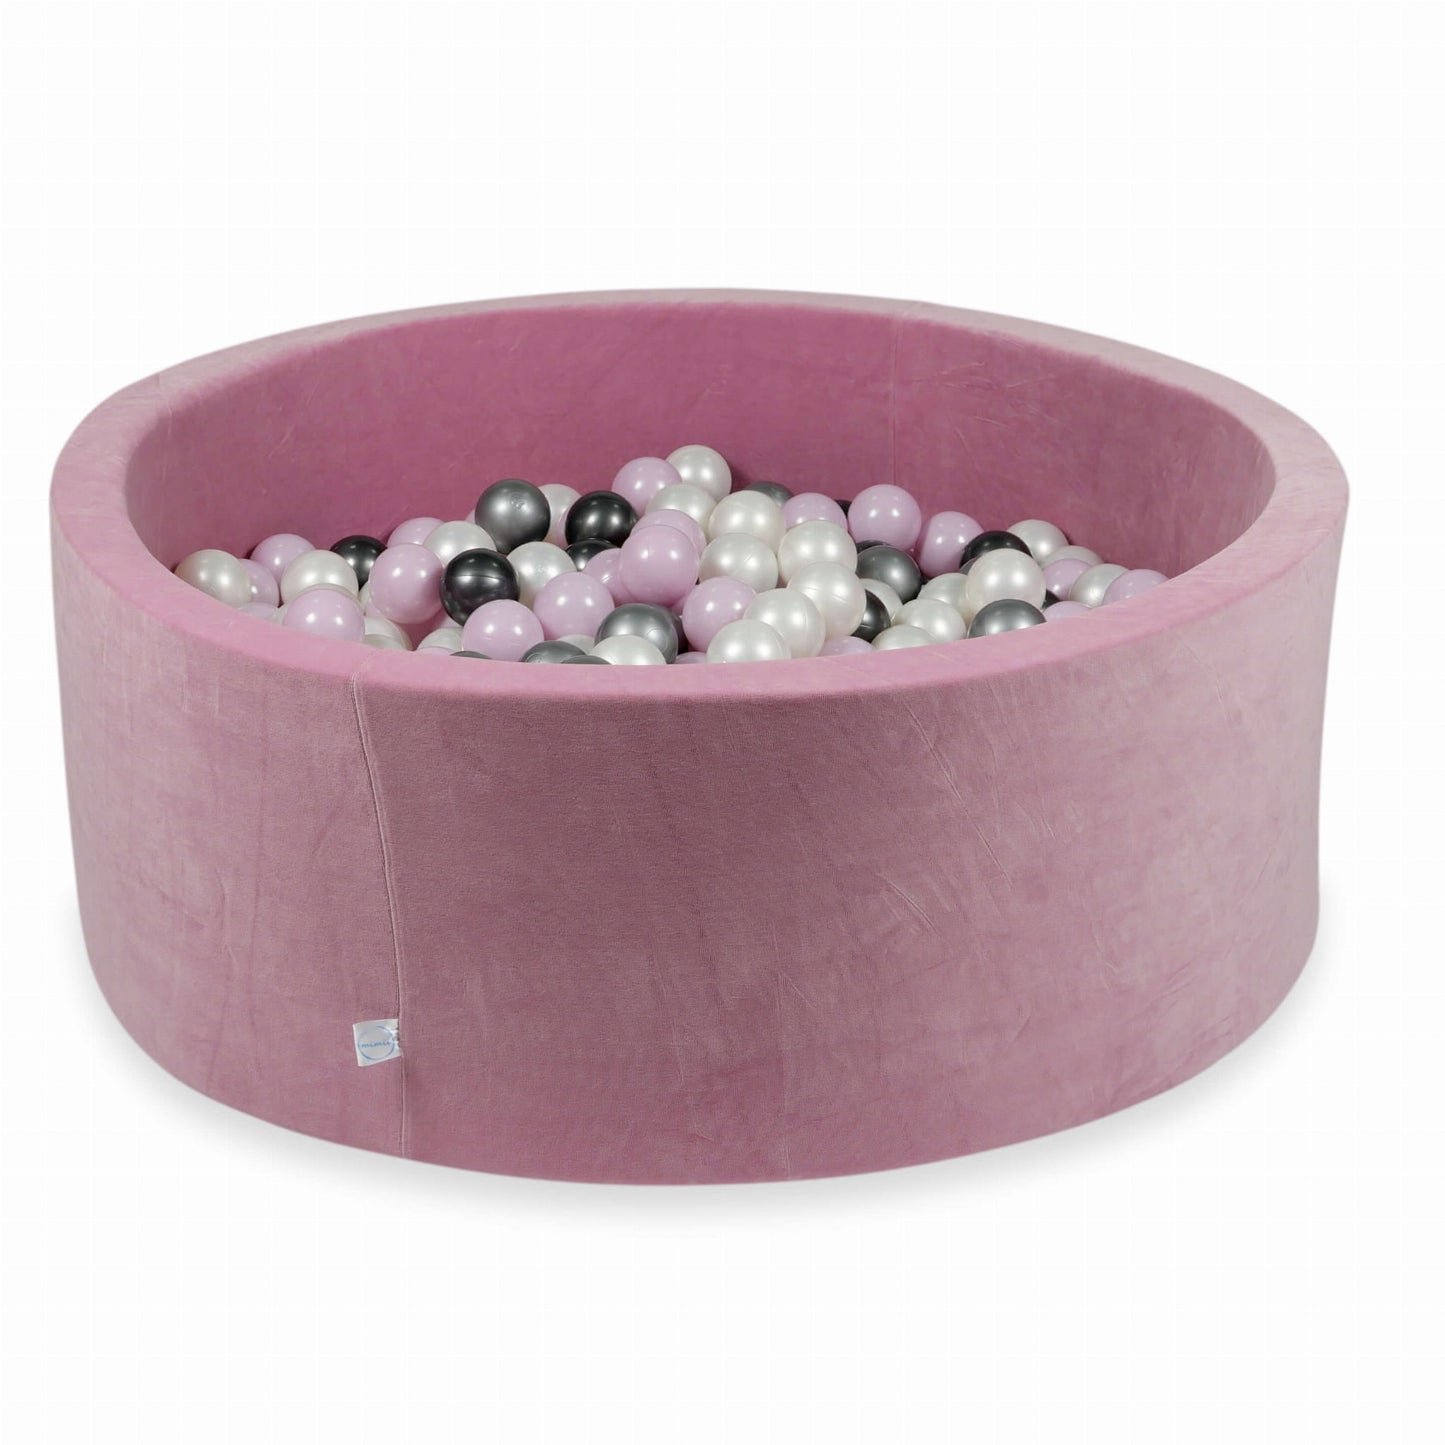 Piscine à Balles 110x40 Velvet Soft rose avec balles 500 pcs (rose perle clair, argent, graphite métallique, perle)